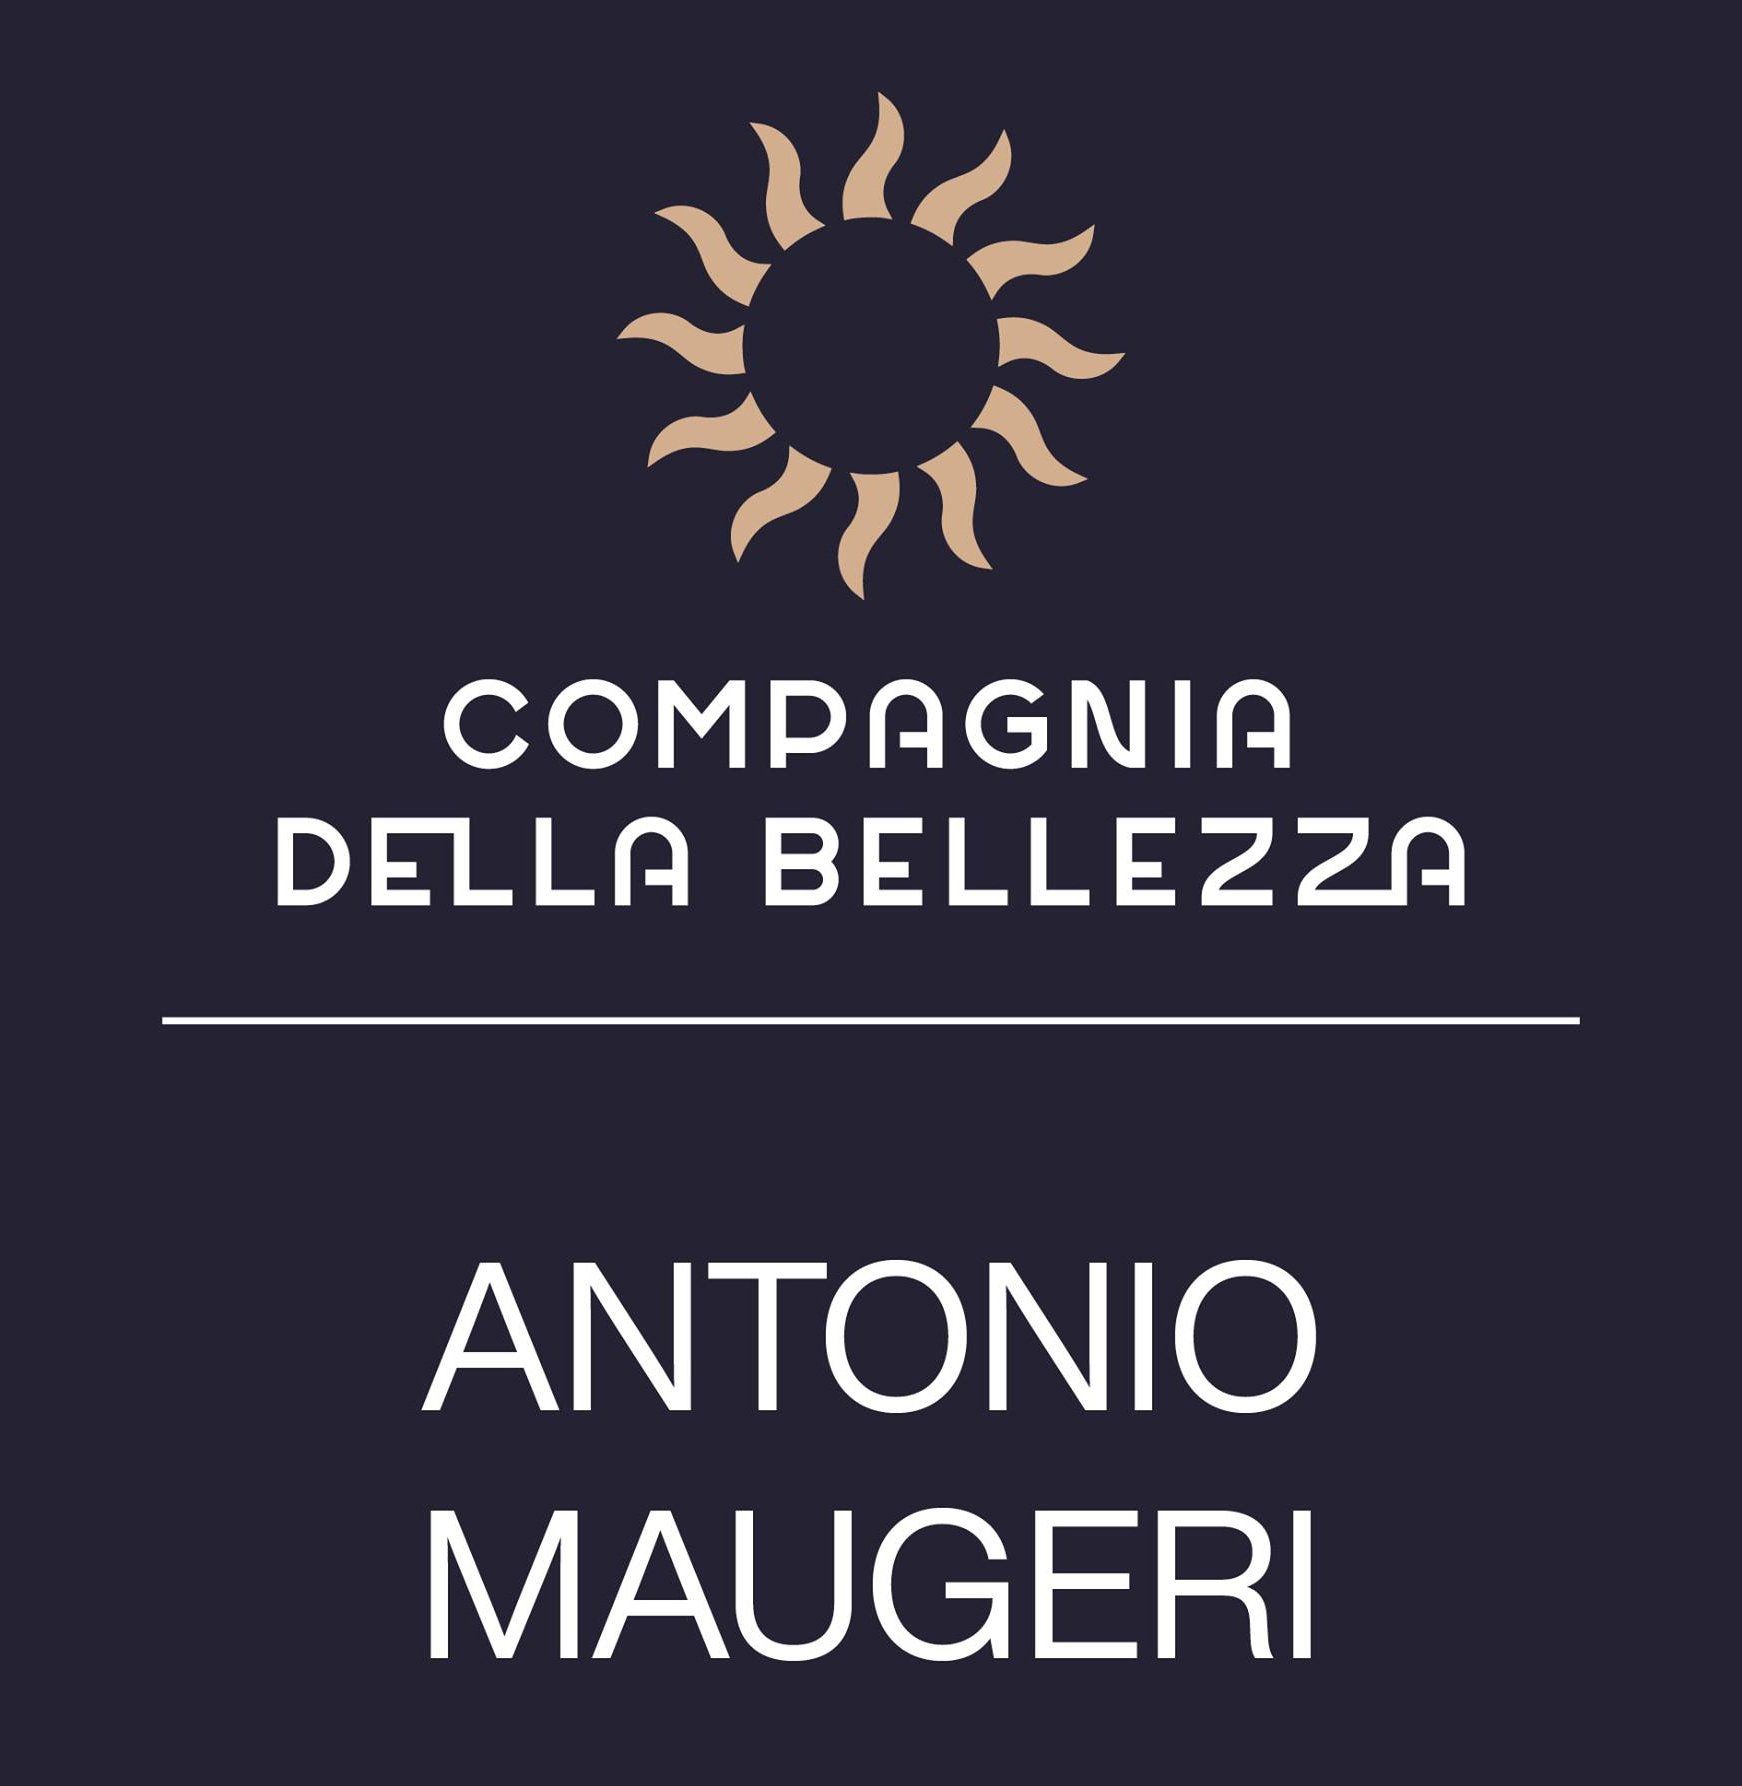 Compagnia della Bellezza - Antonio Maugeri - LOGO